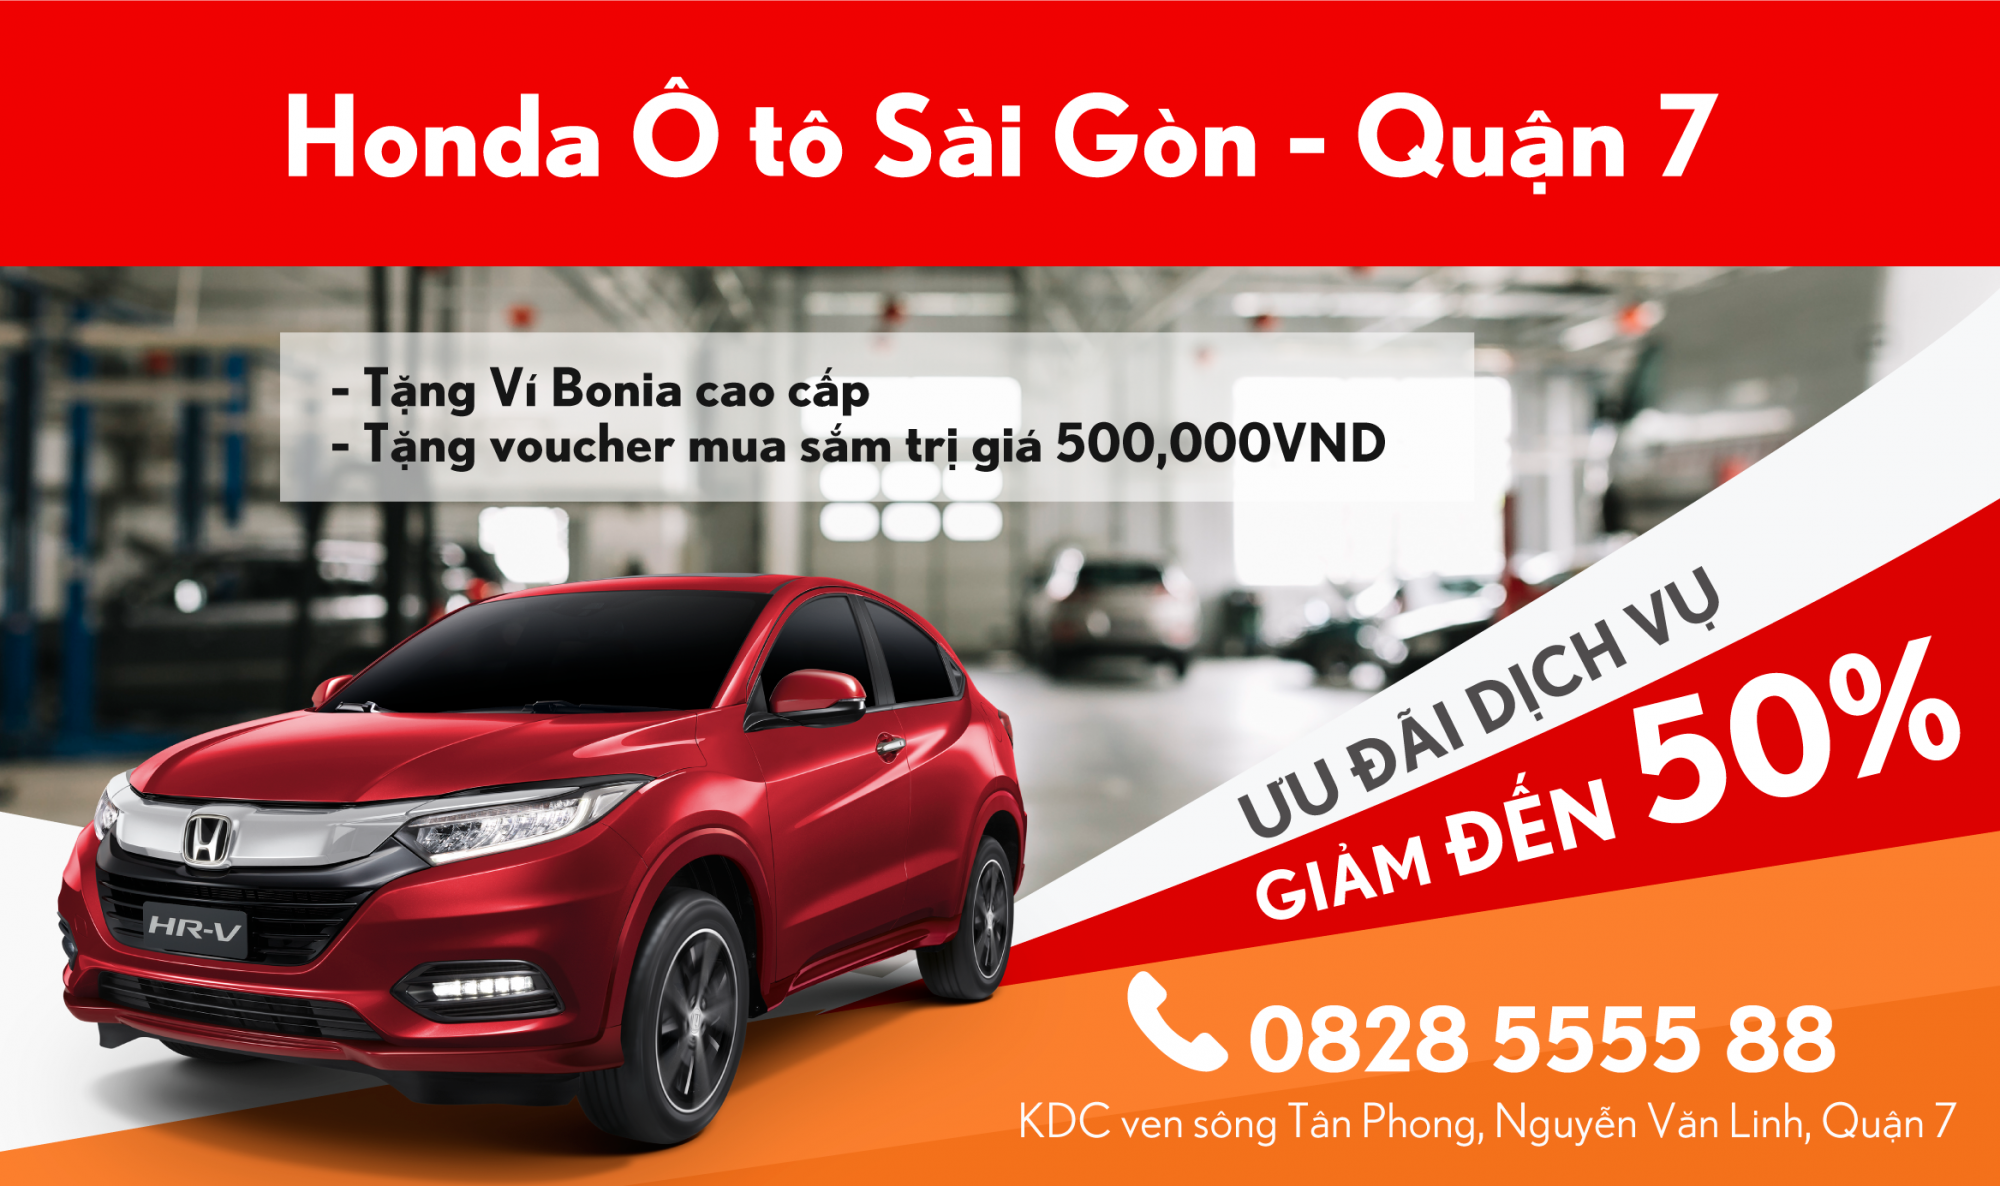 Honda Ô tô Quận 7 Phú Mỹ Hưng Đại lý tại  Ưu đãi dịch vụ – Honda Ôtô  Sài Gòn – Quận 7